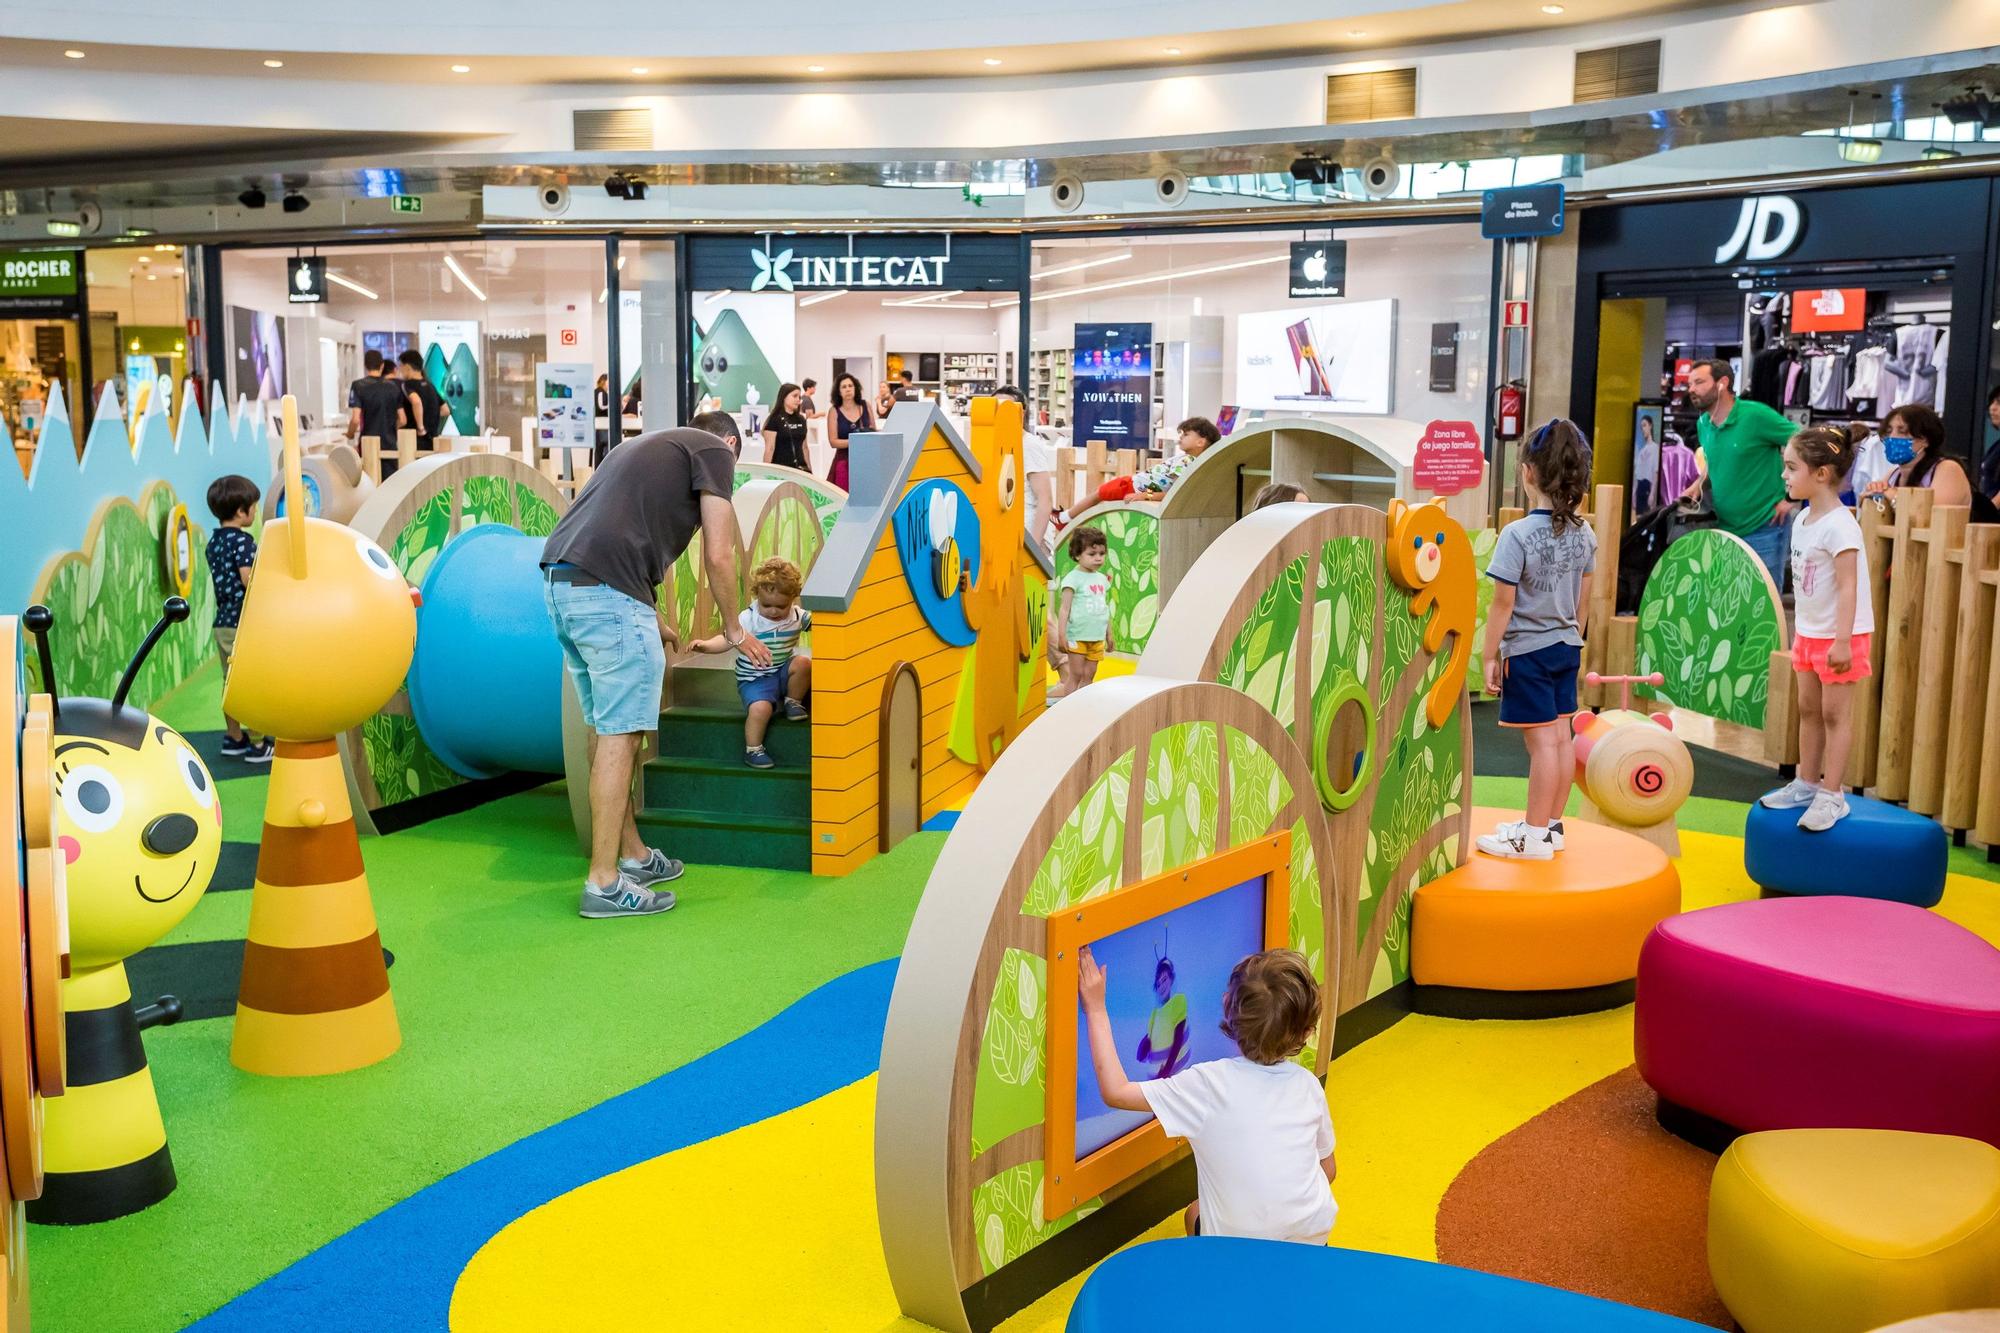 Parque Principado estrena parque infantil: así es la nueva zona de juegos inspirada en un bosque y sus habitantes mágicos